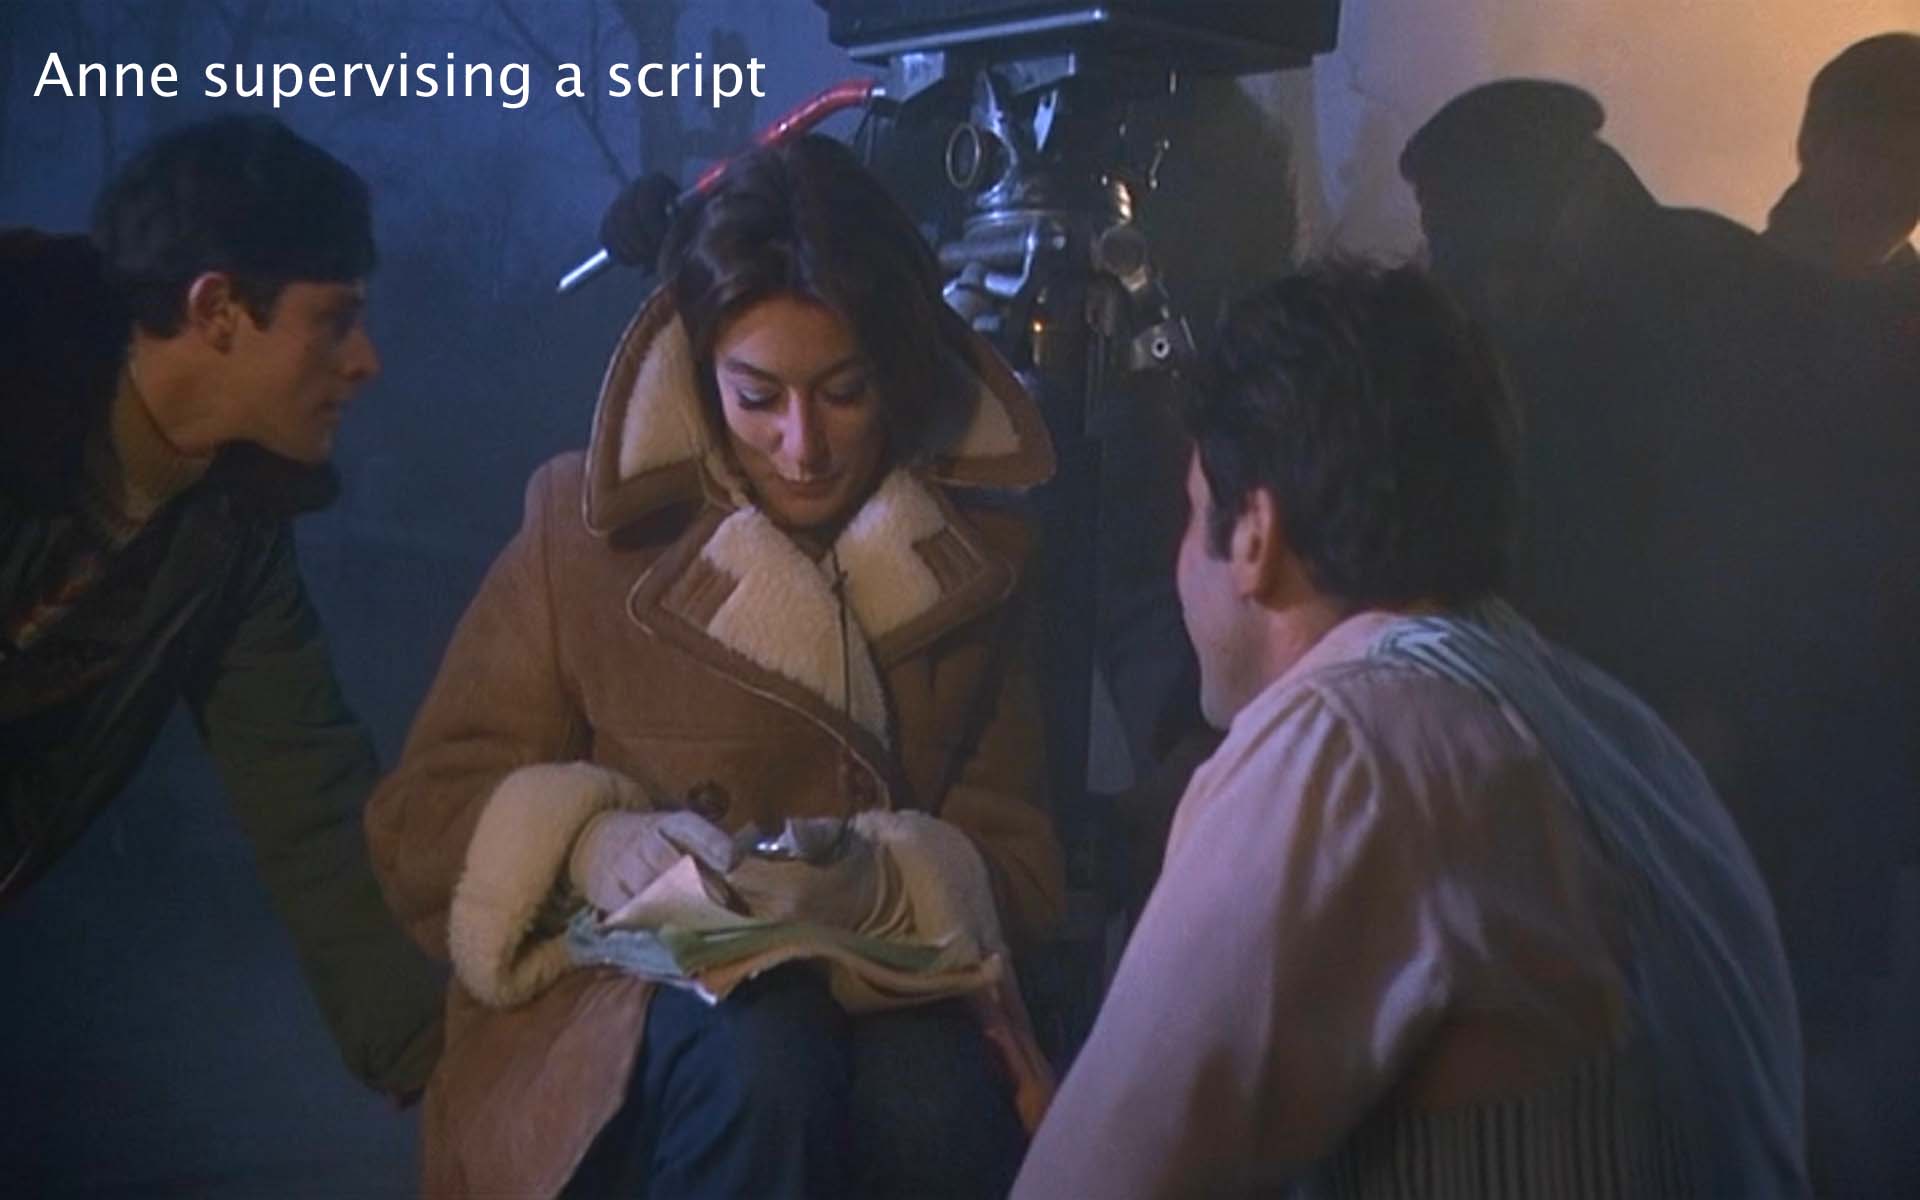 Anne supervising a script